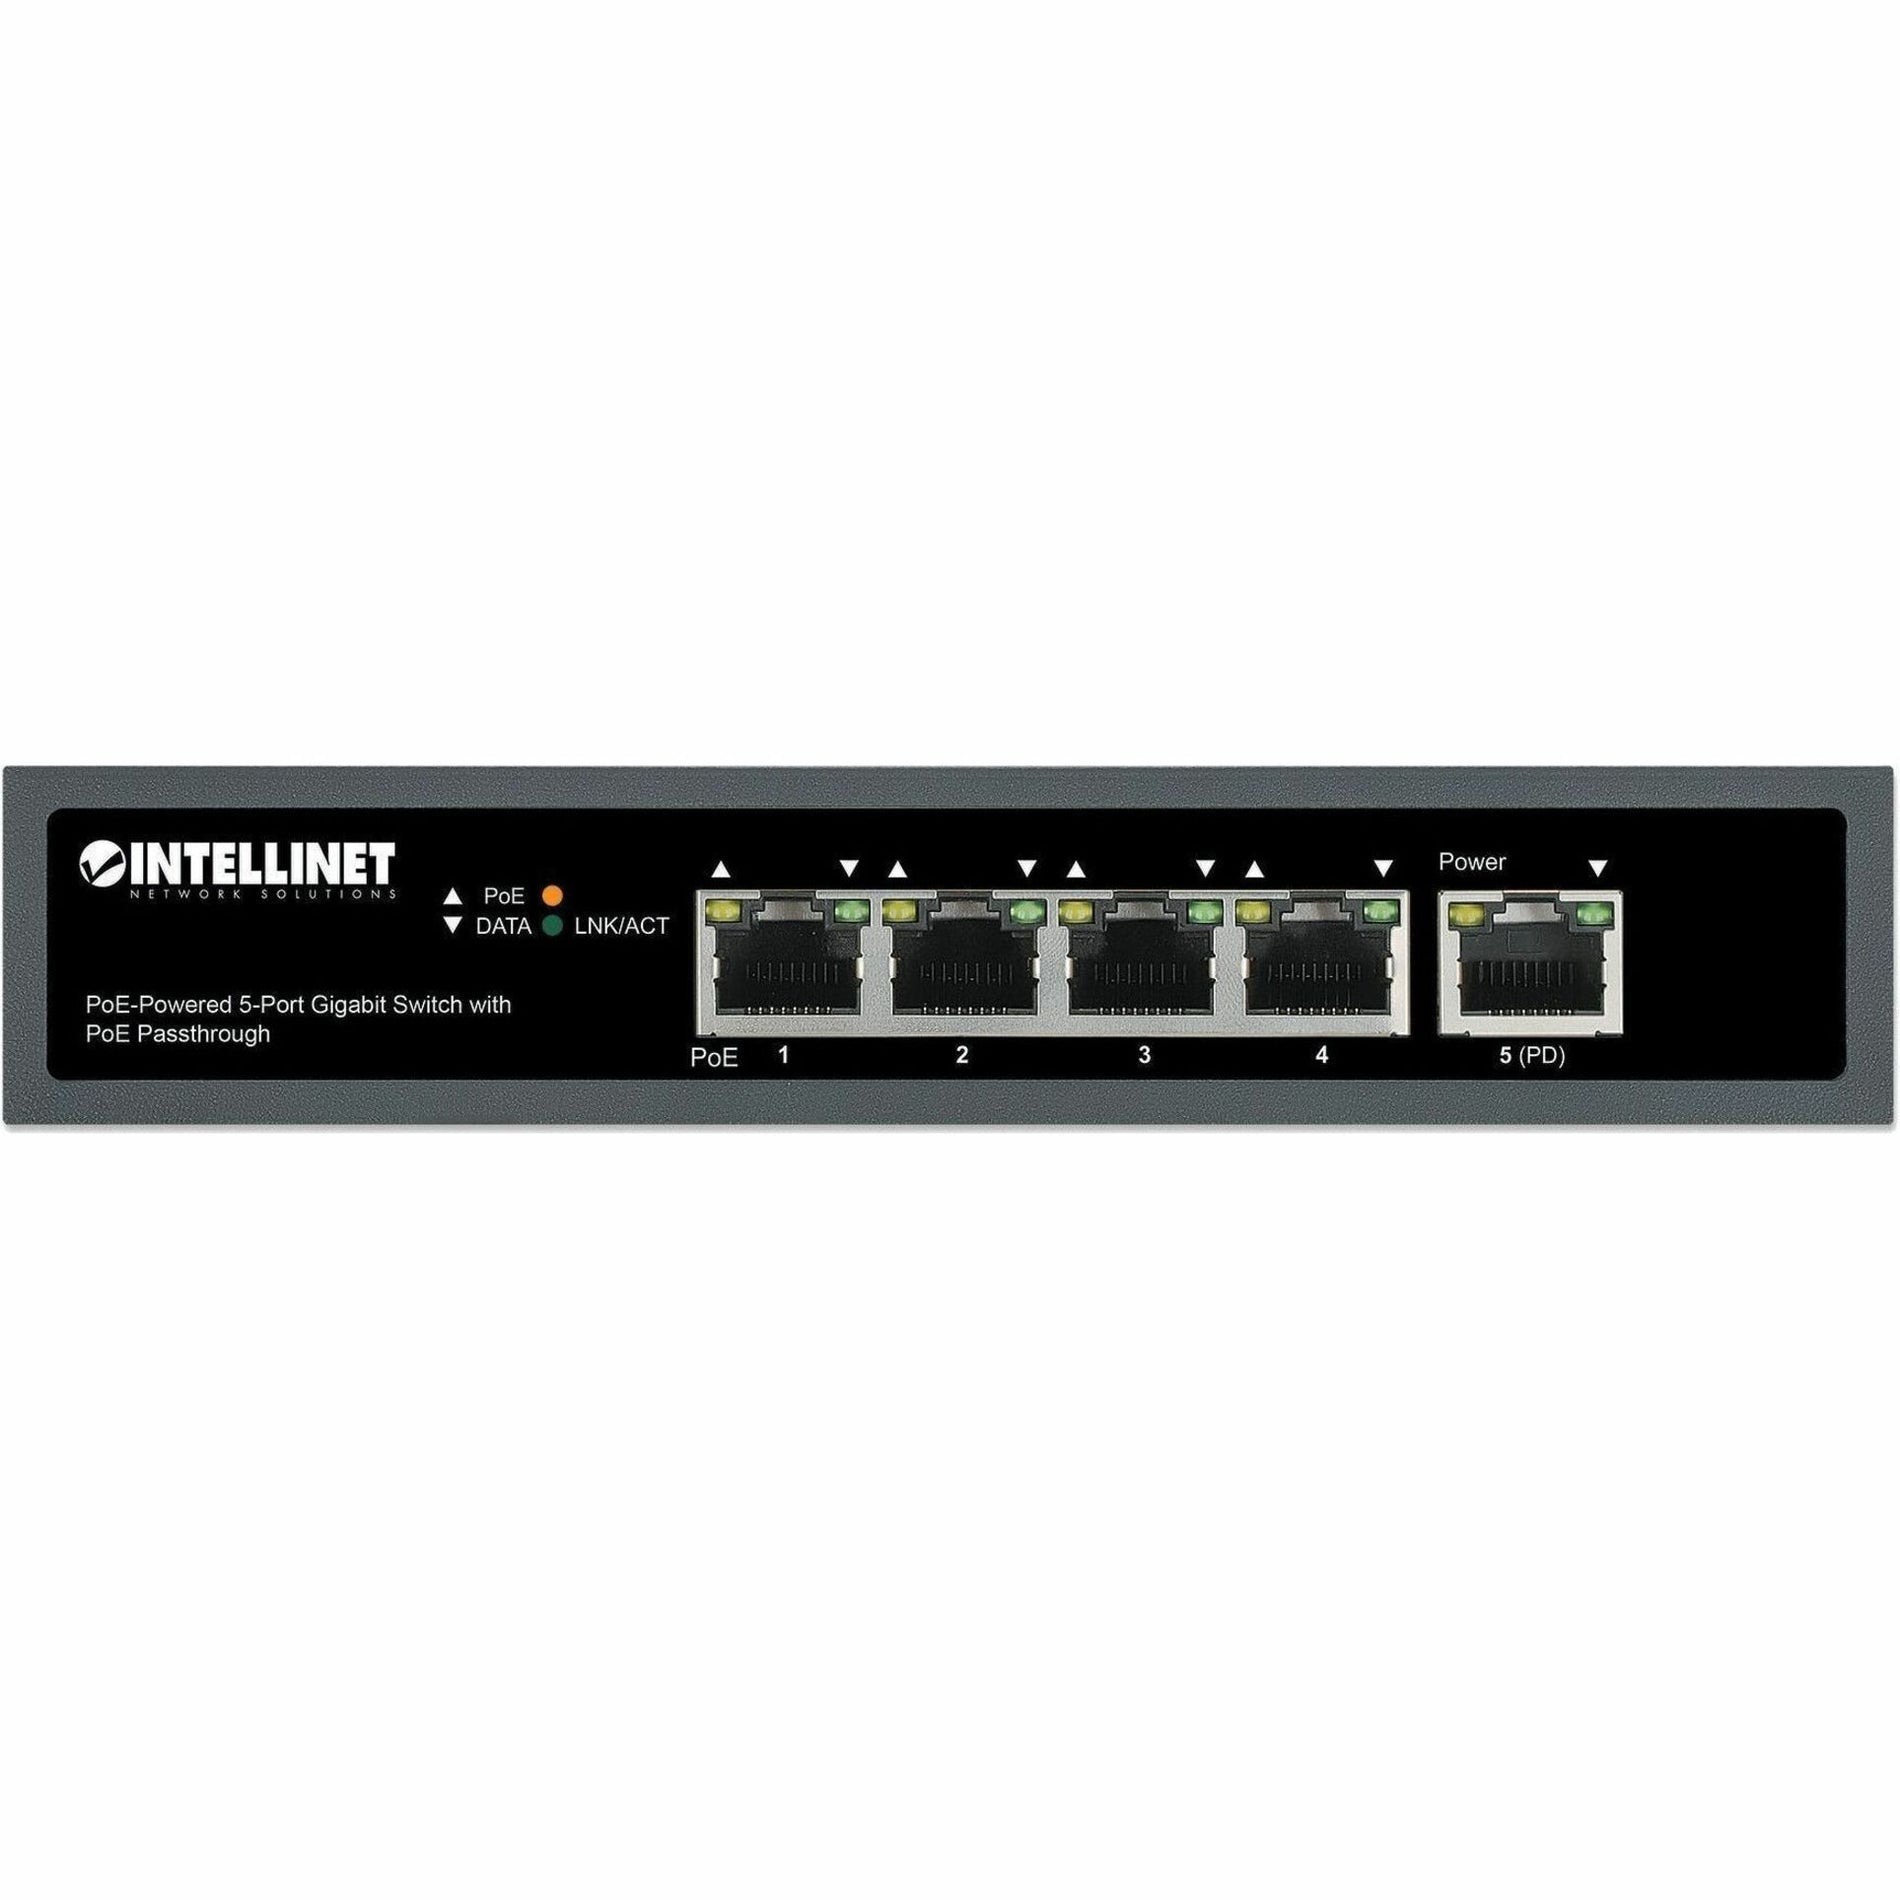 Intellinet (561808) Switches & Bridges